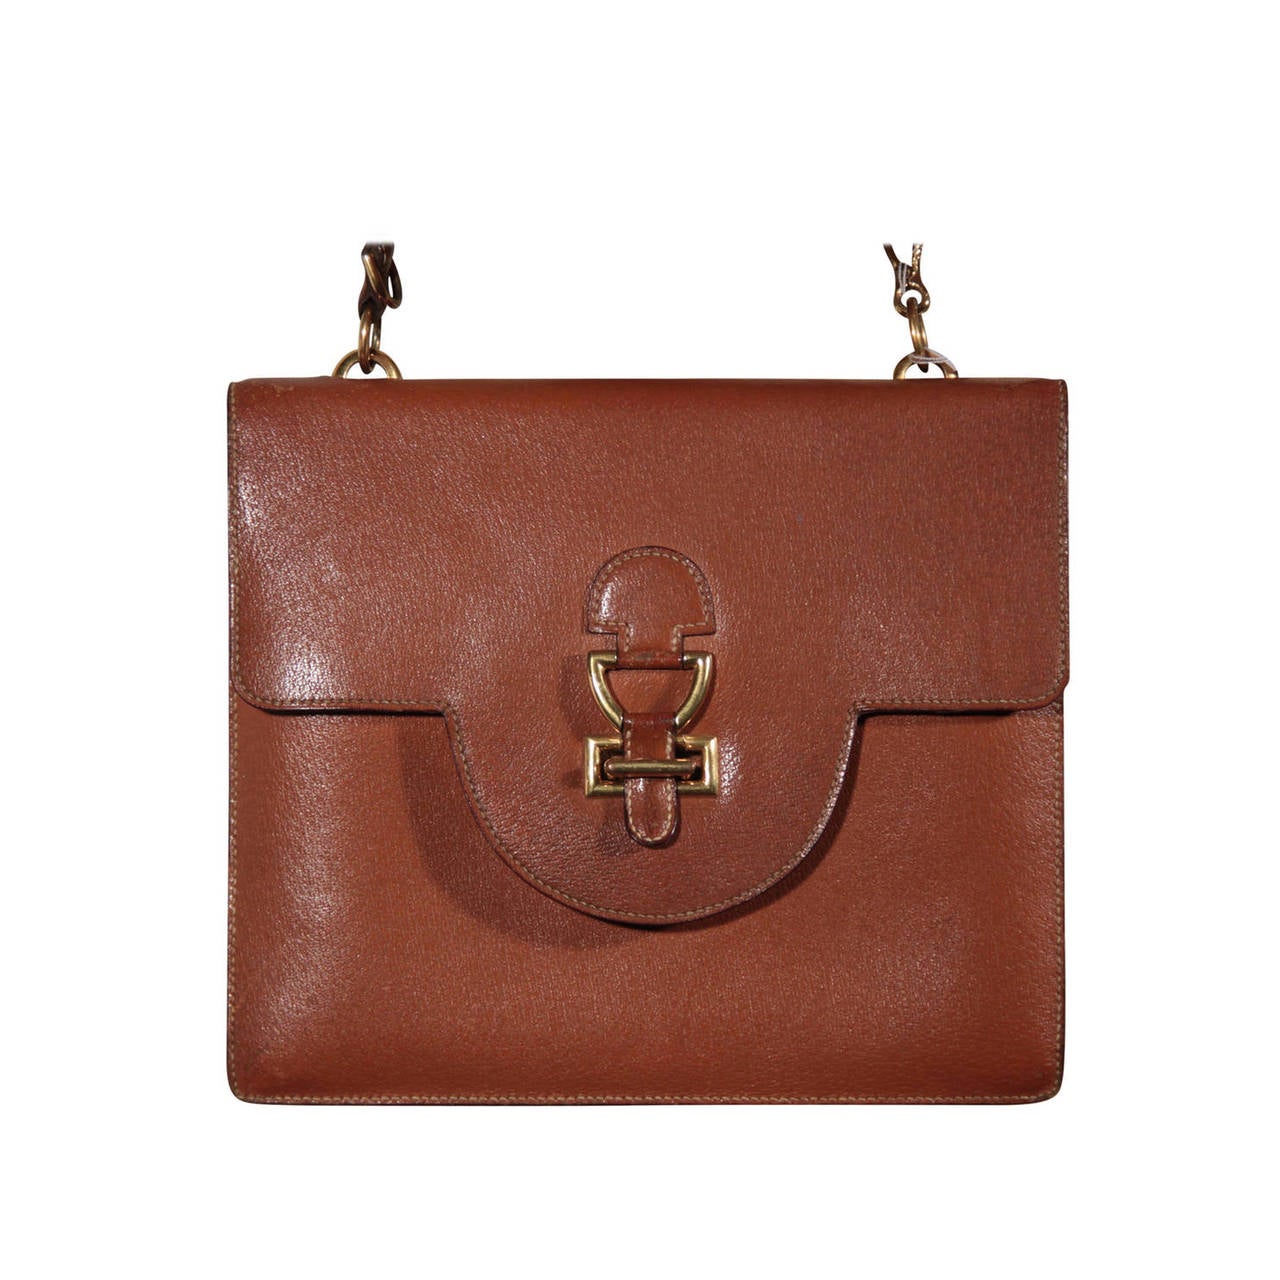 HERMES PARIS Vintage 1960s Tan Leather FLAP SHOULDER BAG Handbag PURSE For Sale at 1stdibs